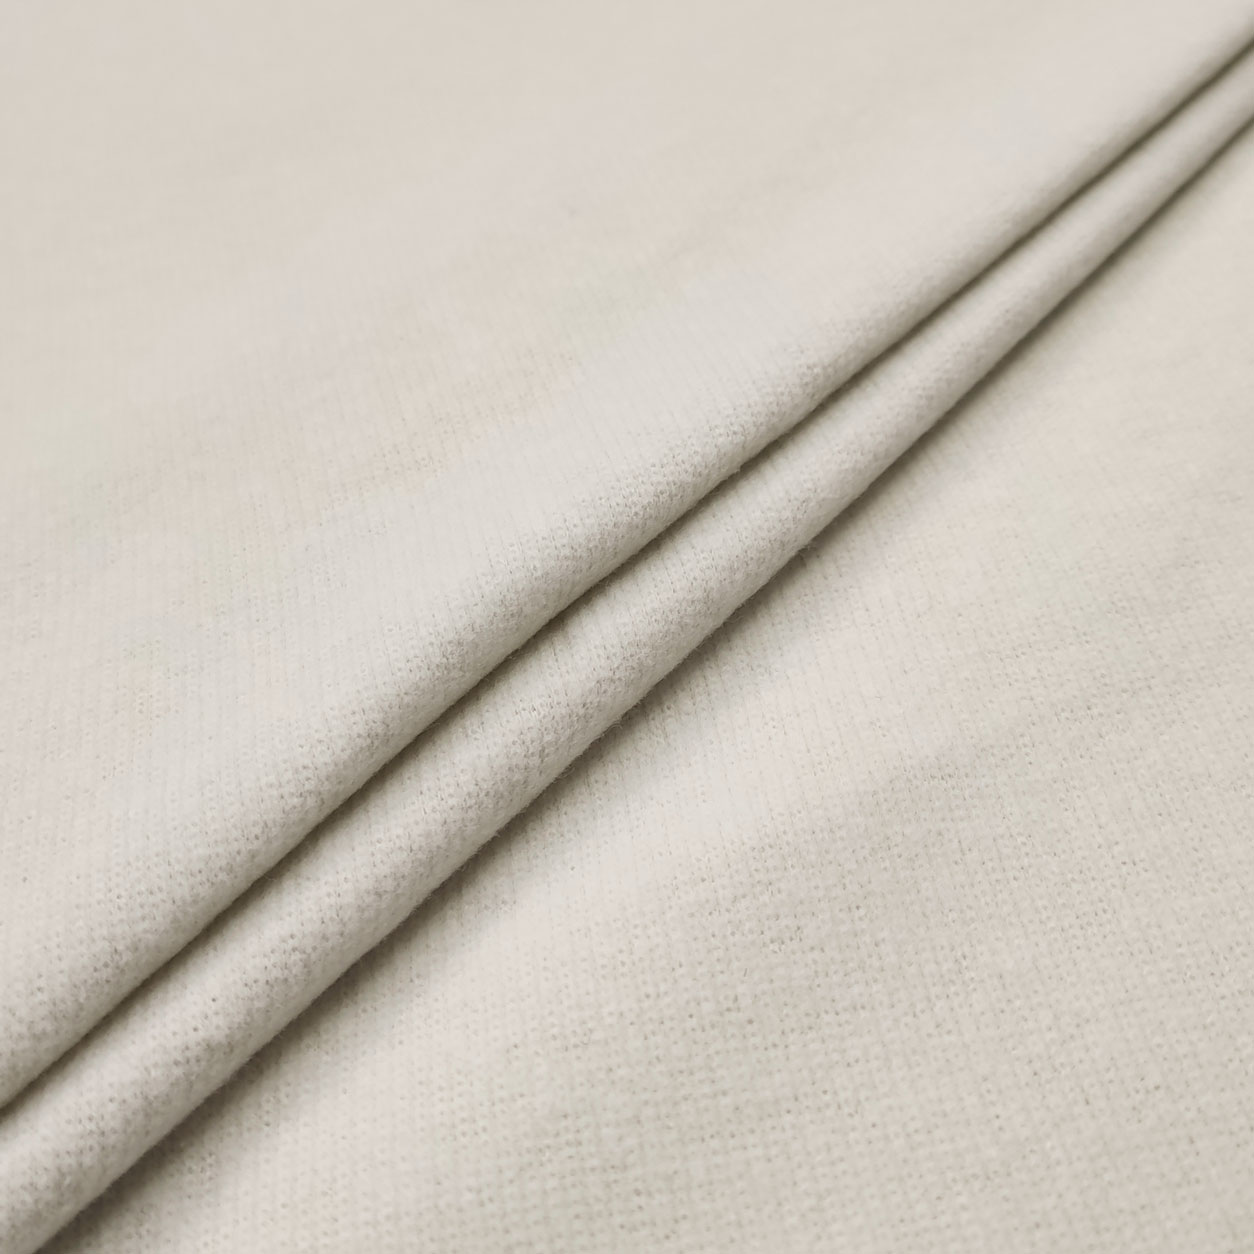 tessuto-maglia-punto-milano-pettinato-bianco